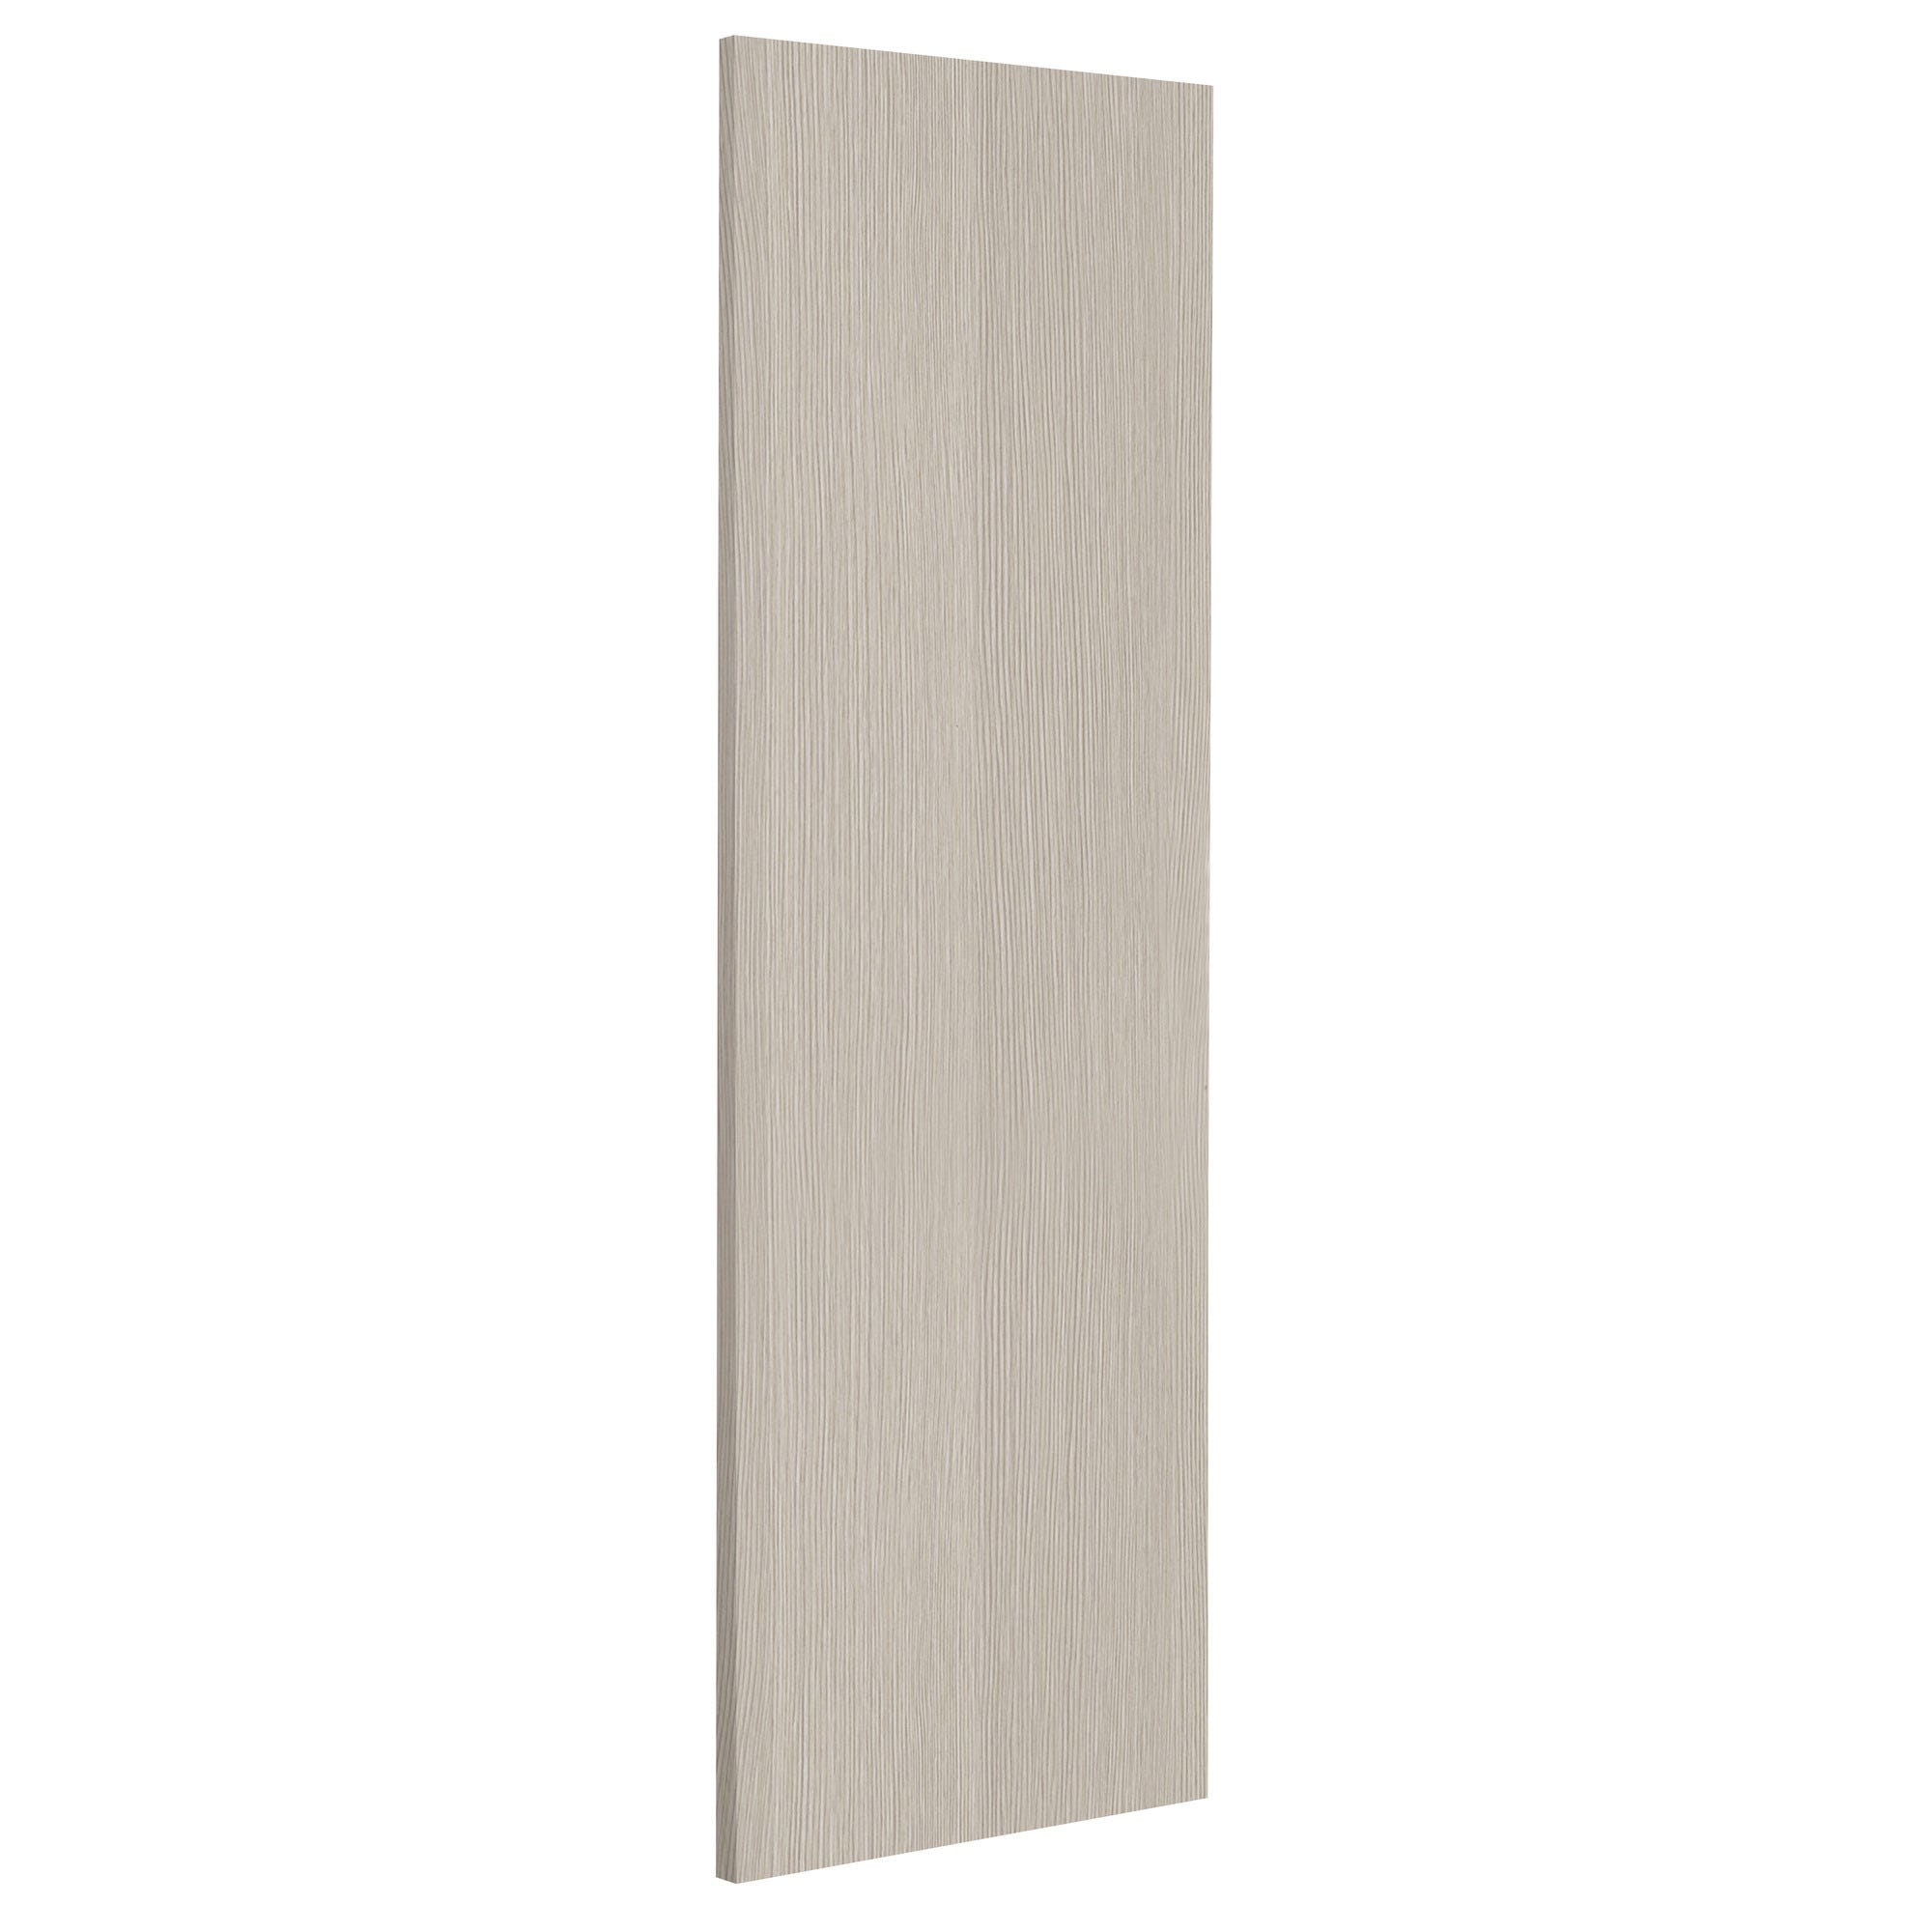 Porte seule revêtue chêne blanc H.204 x l.73 cm 0